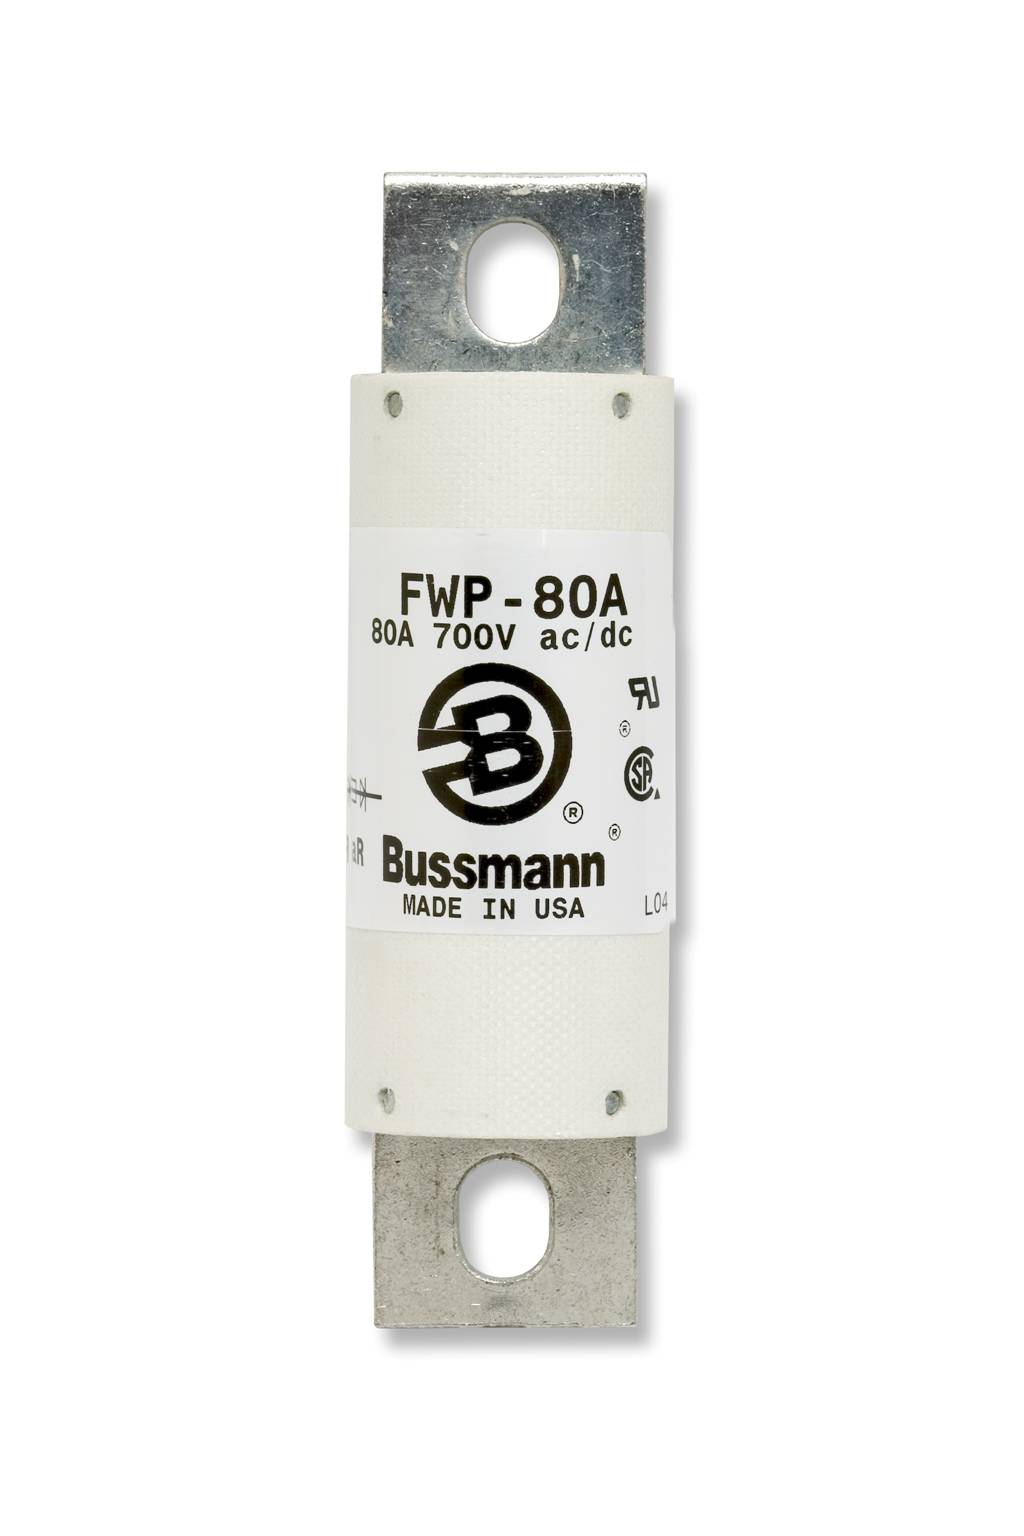 Part# FWP-1000A  Manufacturer BUSSMANN  Part Type 700 Volt Fuse